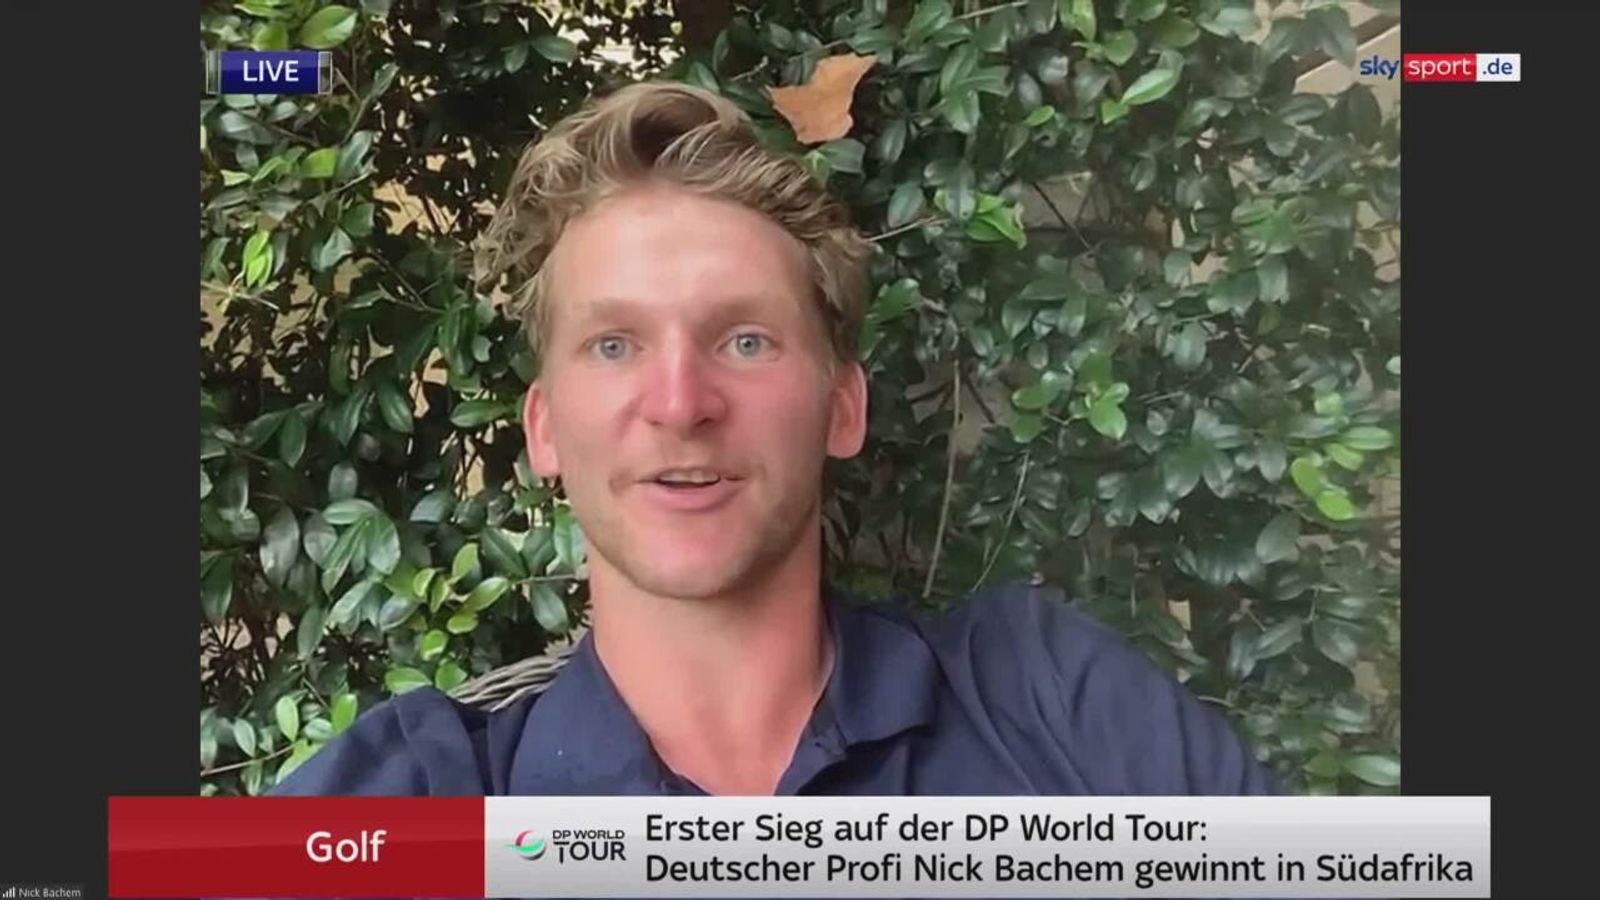 Golf Deutscher Profi Nick Bachem feiert ersten Erfolg bei DP World Tour in Südafrika Golf News Sky Sport